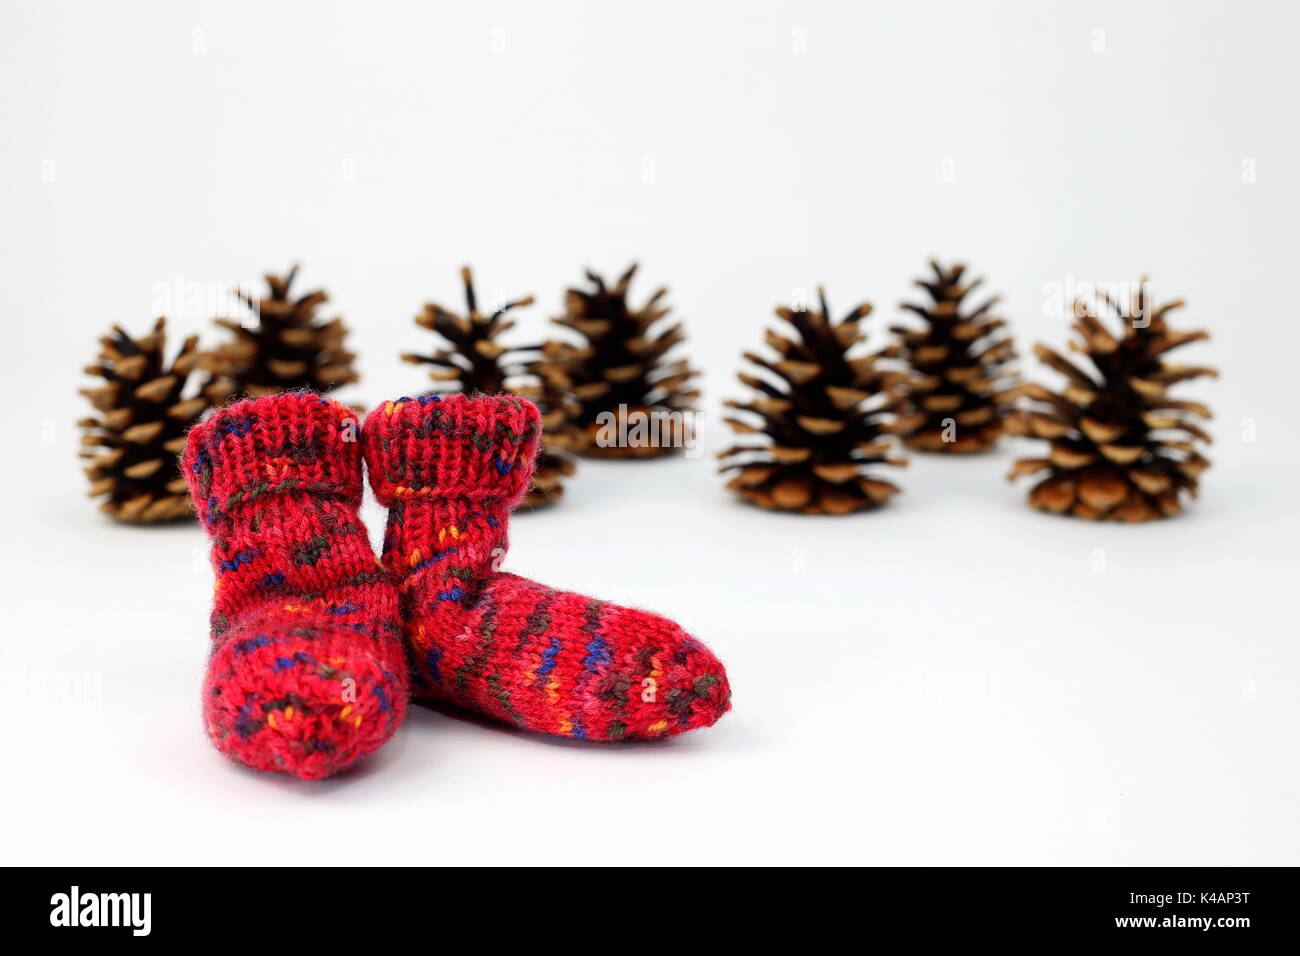 Pine Cones With Woolen Socks Stock Photo